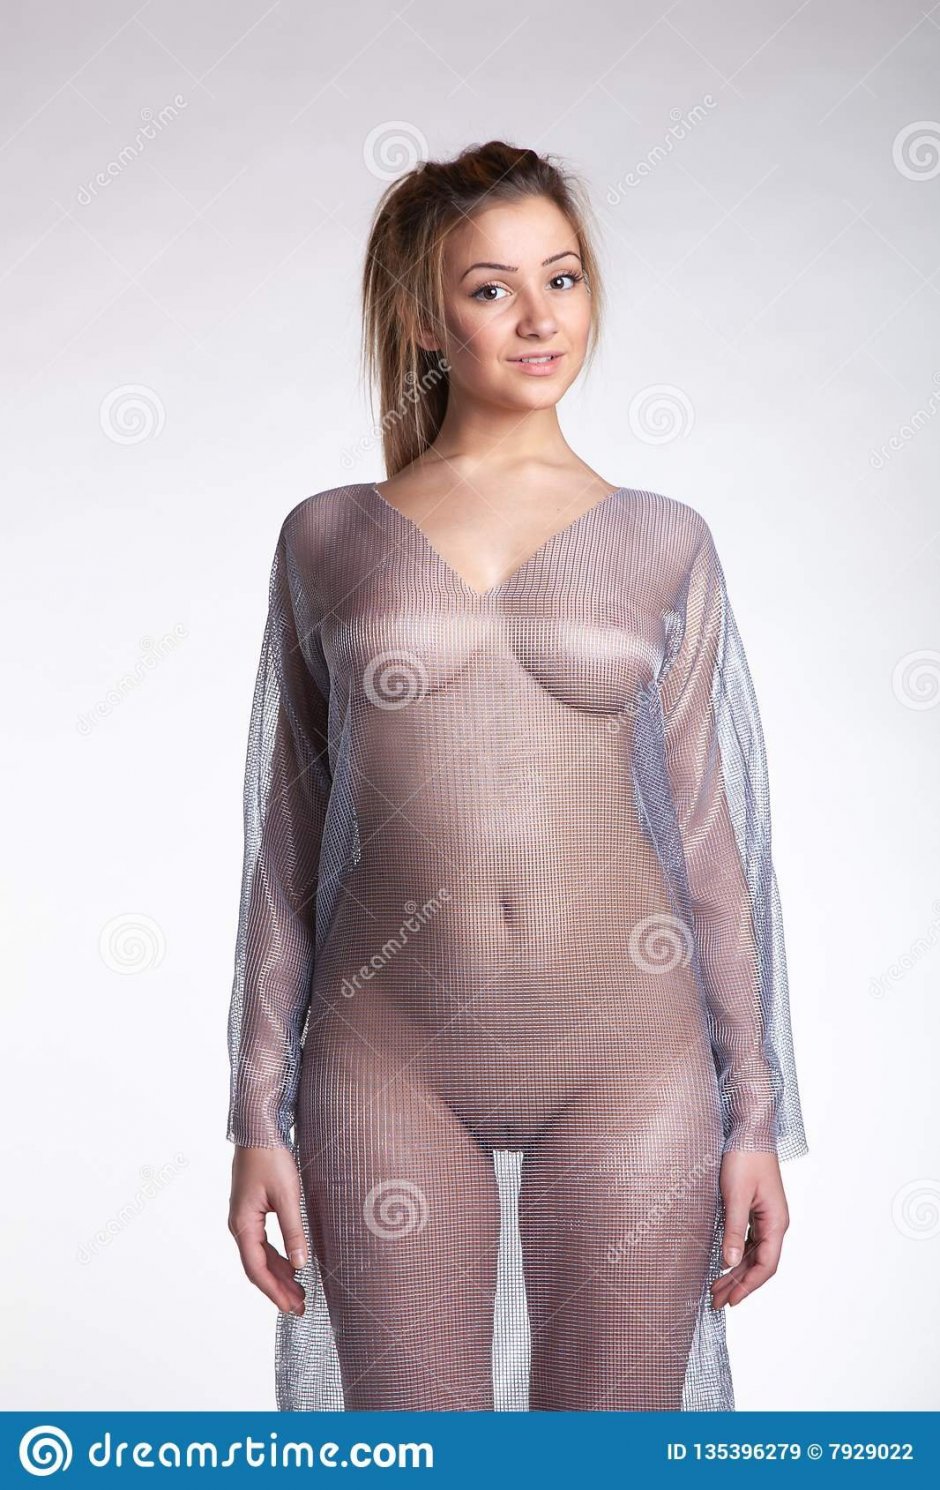 фото голая девушка в прозрачной одежде фото 15